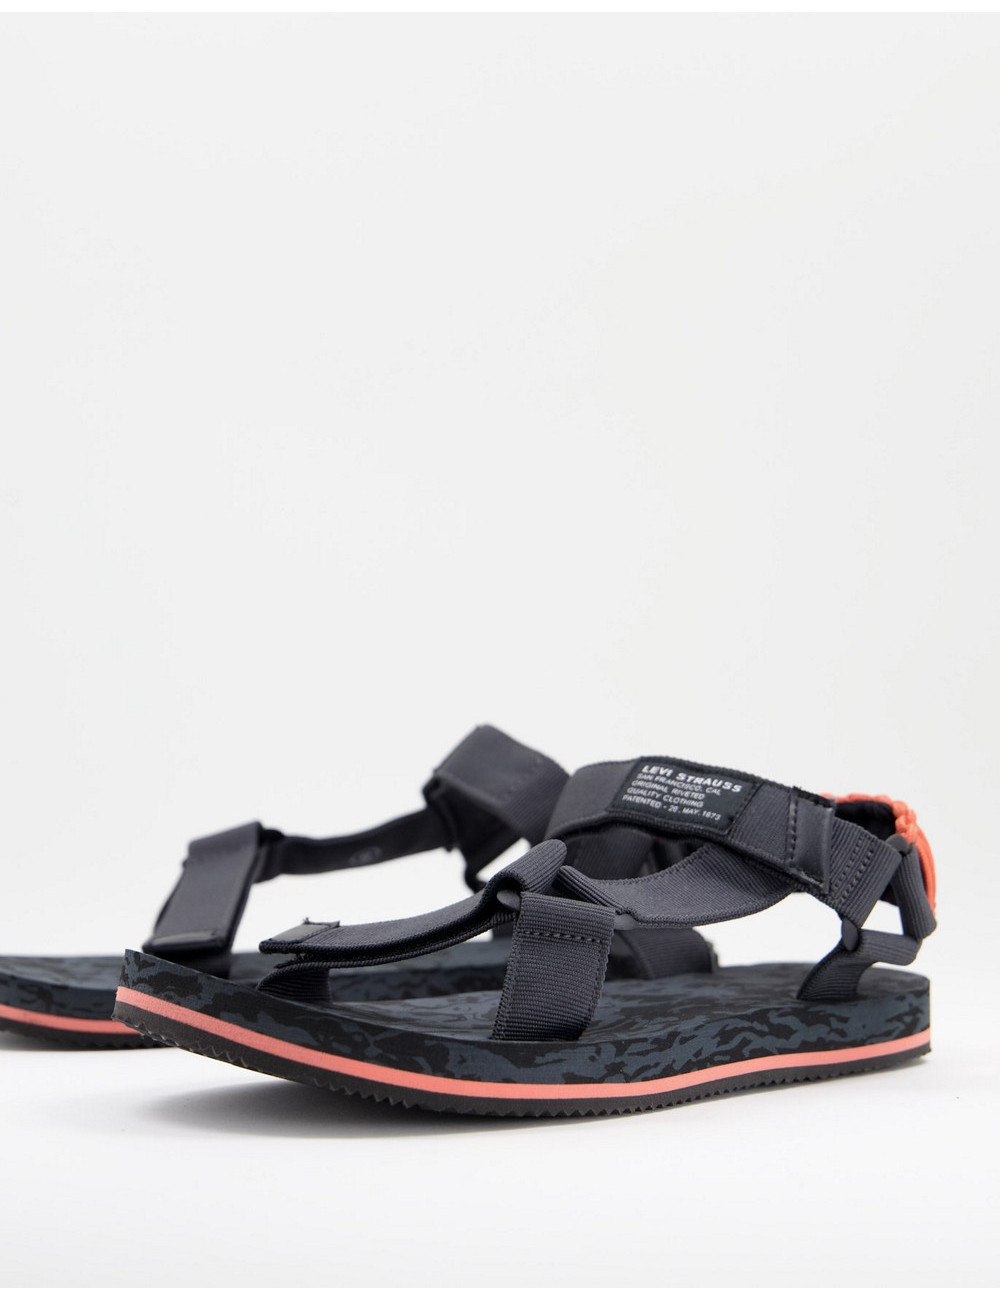 Levi's tahoe sandal in...